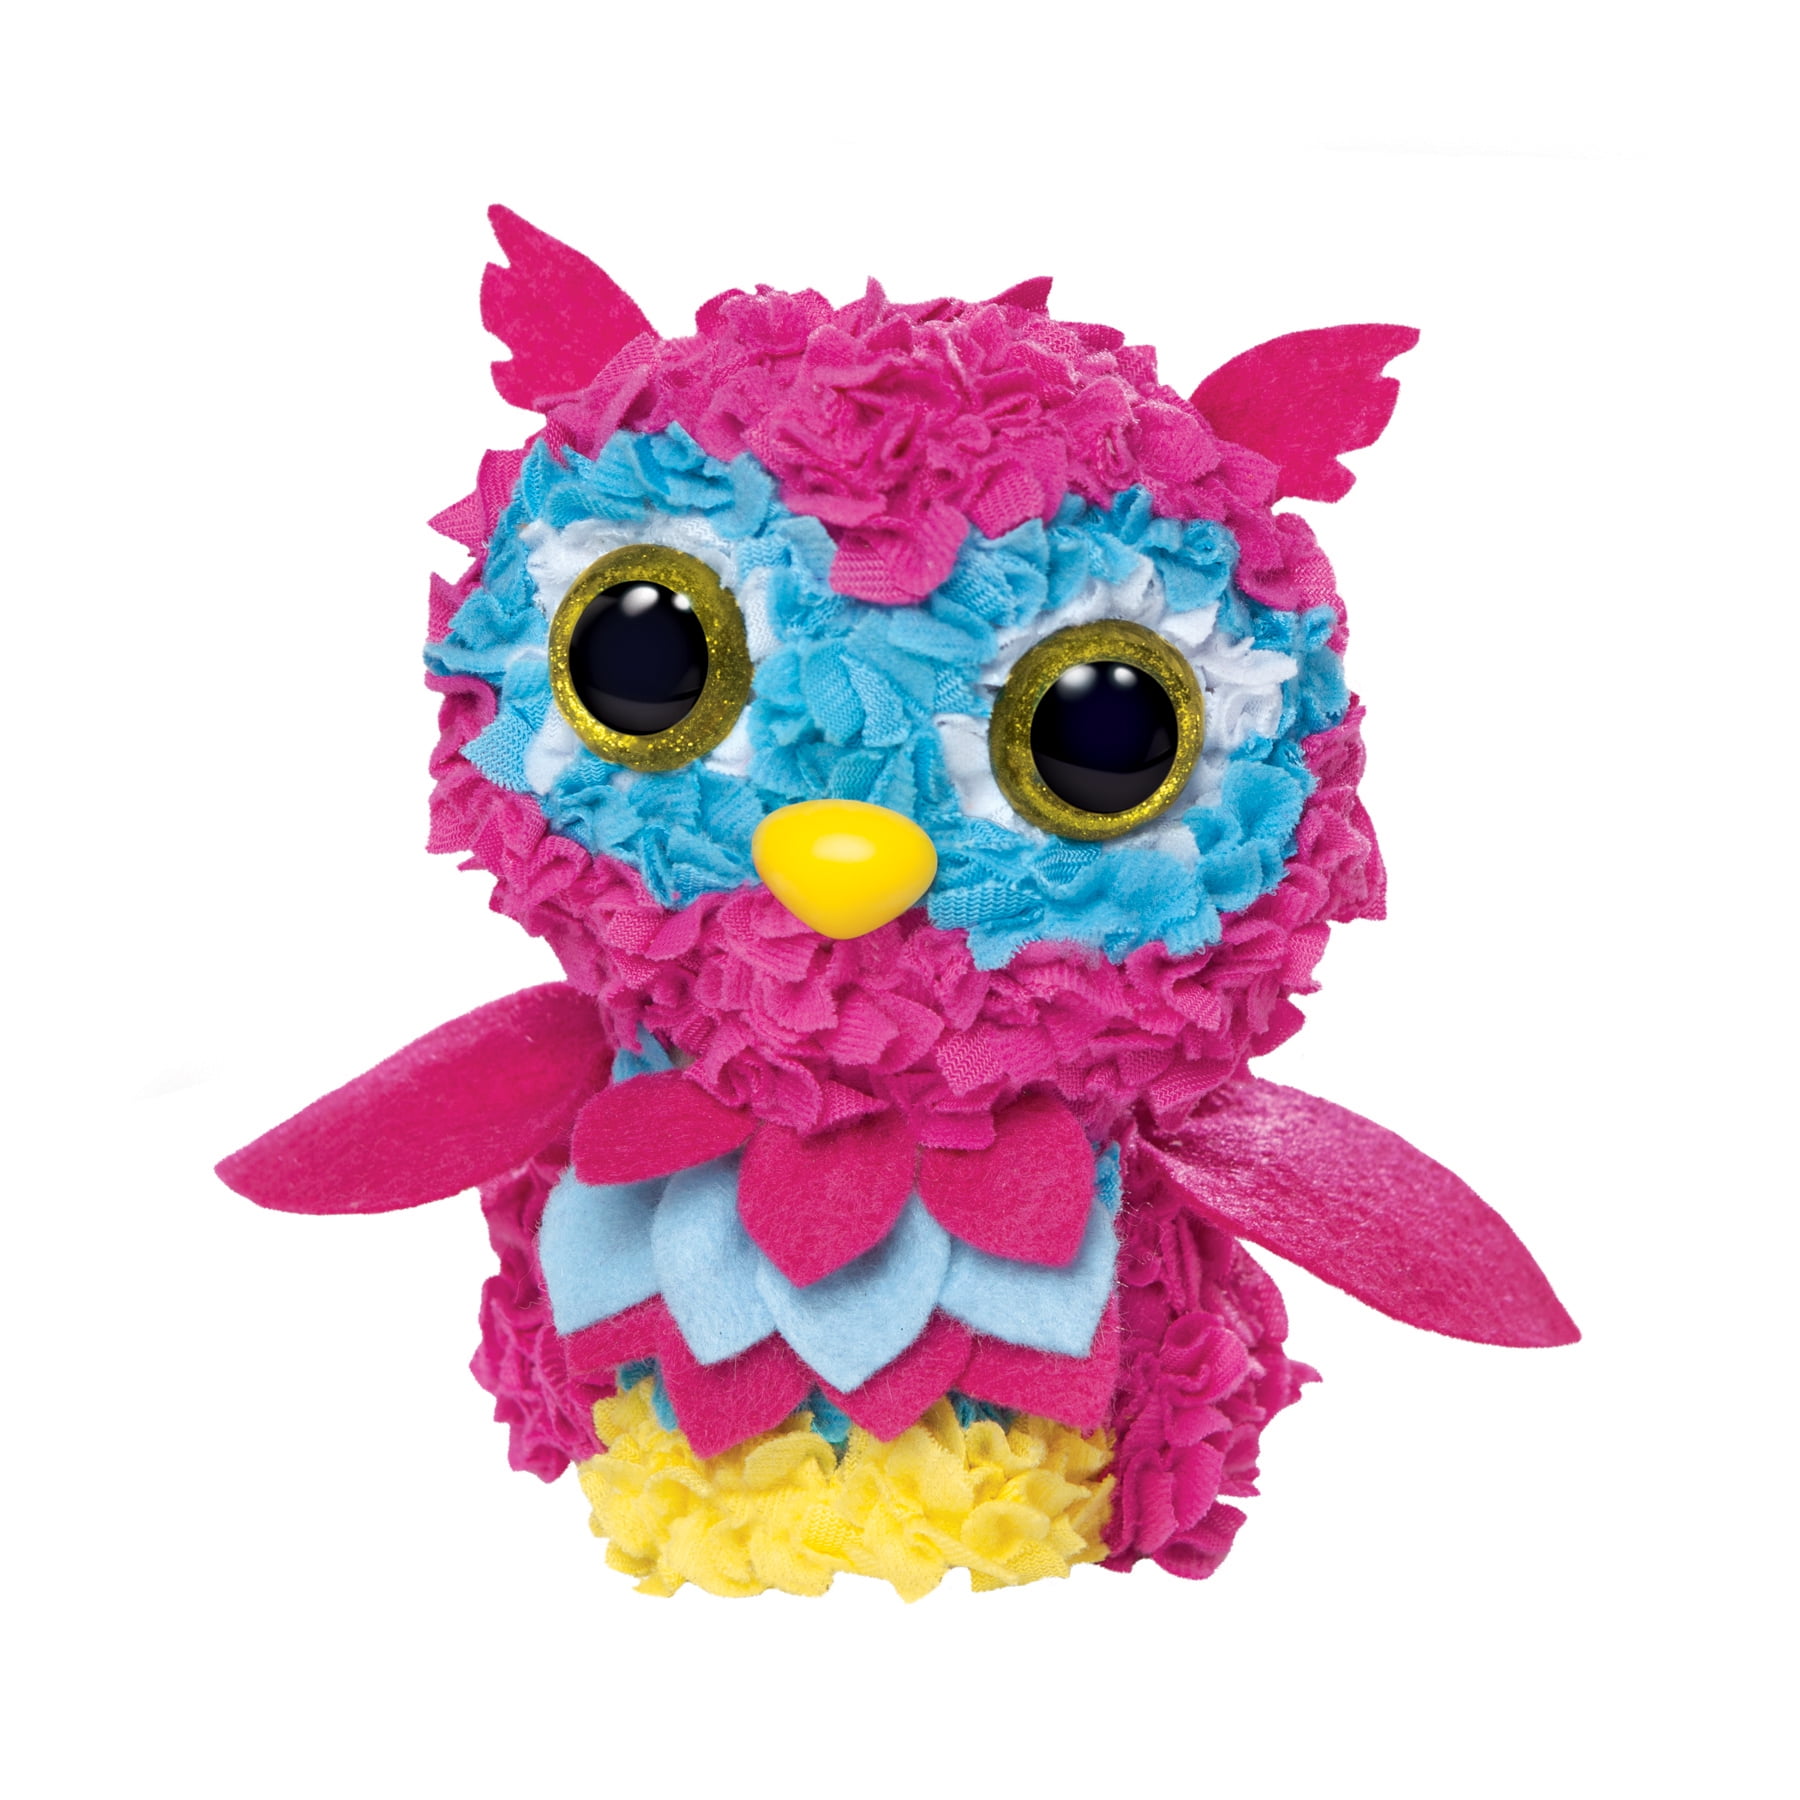 PlushCraft Make an Owl Kit for Kids